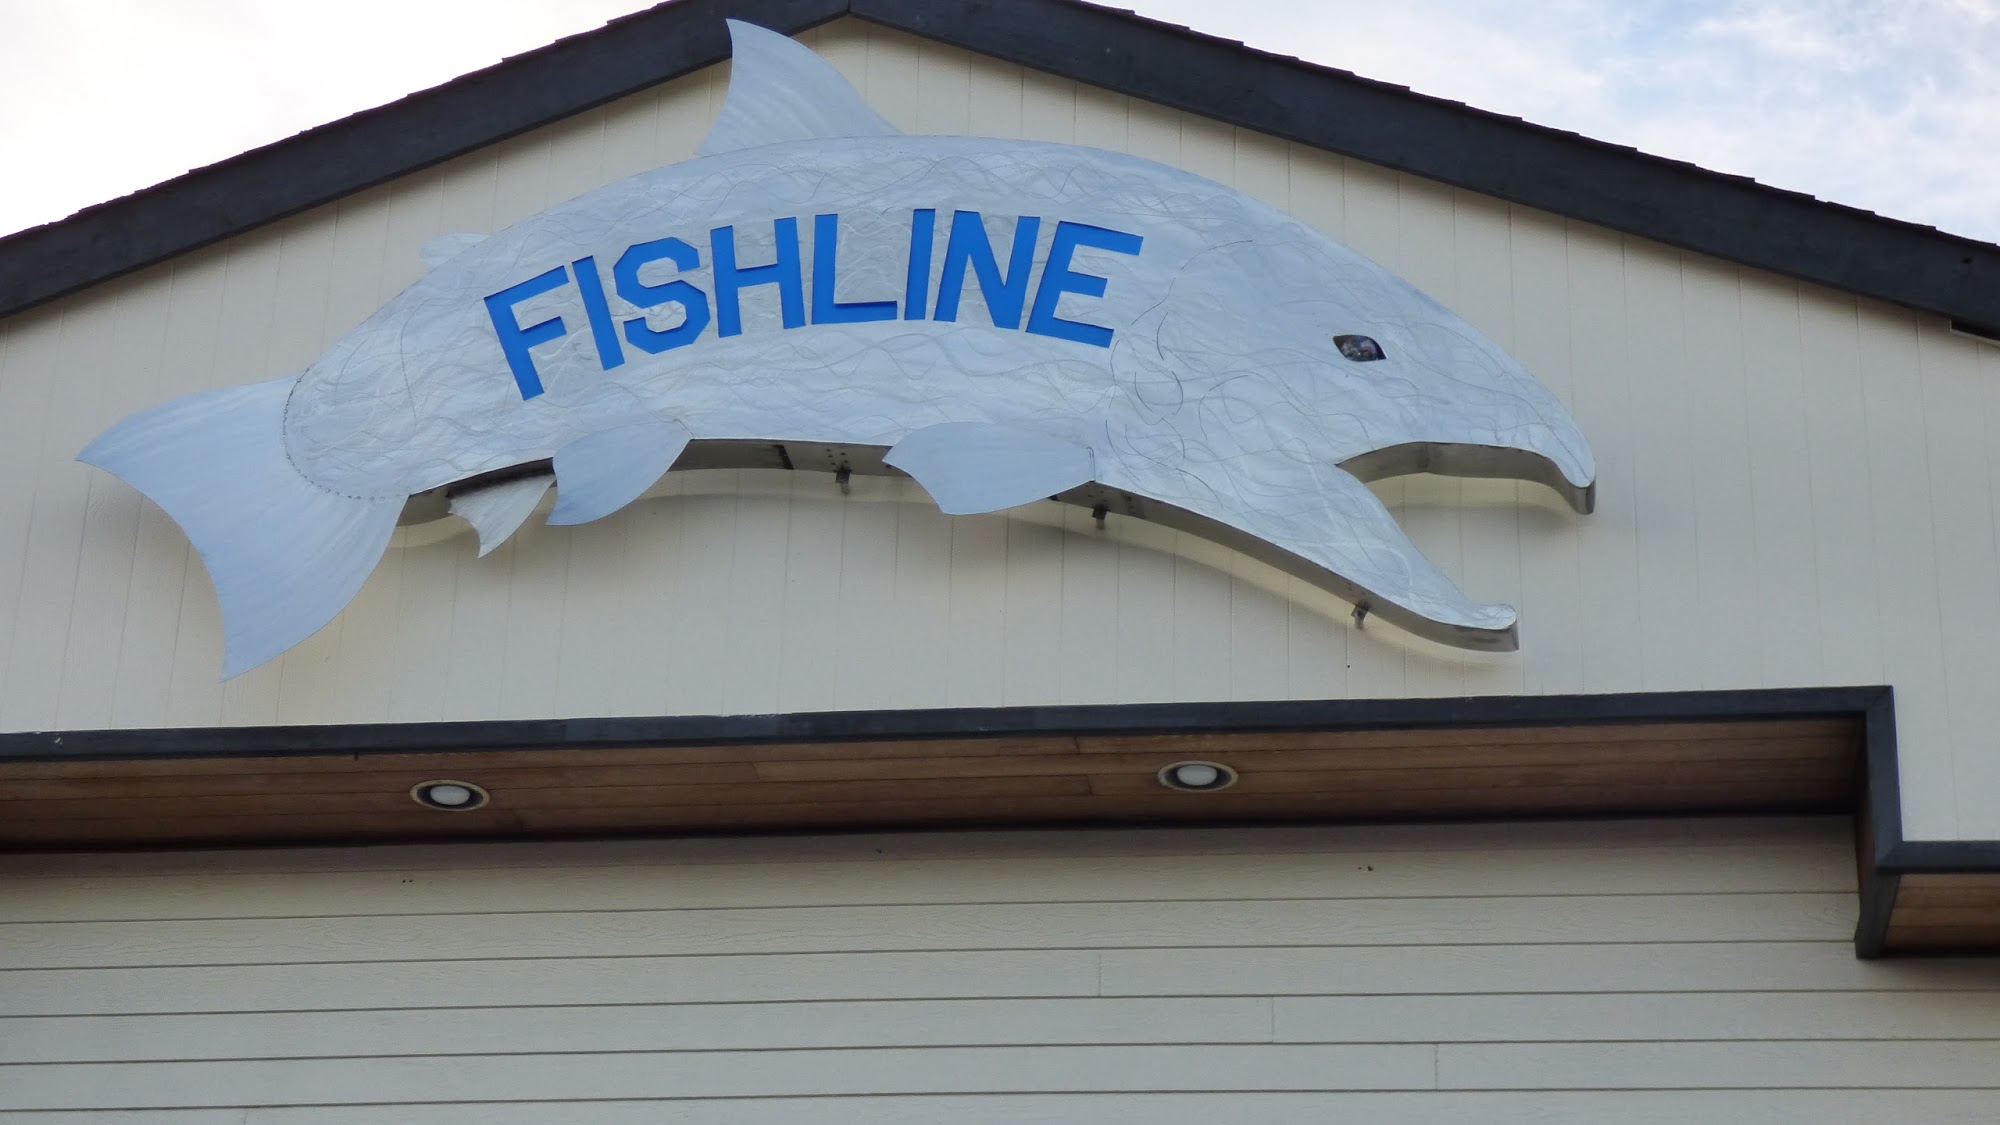 Fishline Food Bank & Comprehensive Services